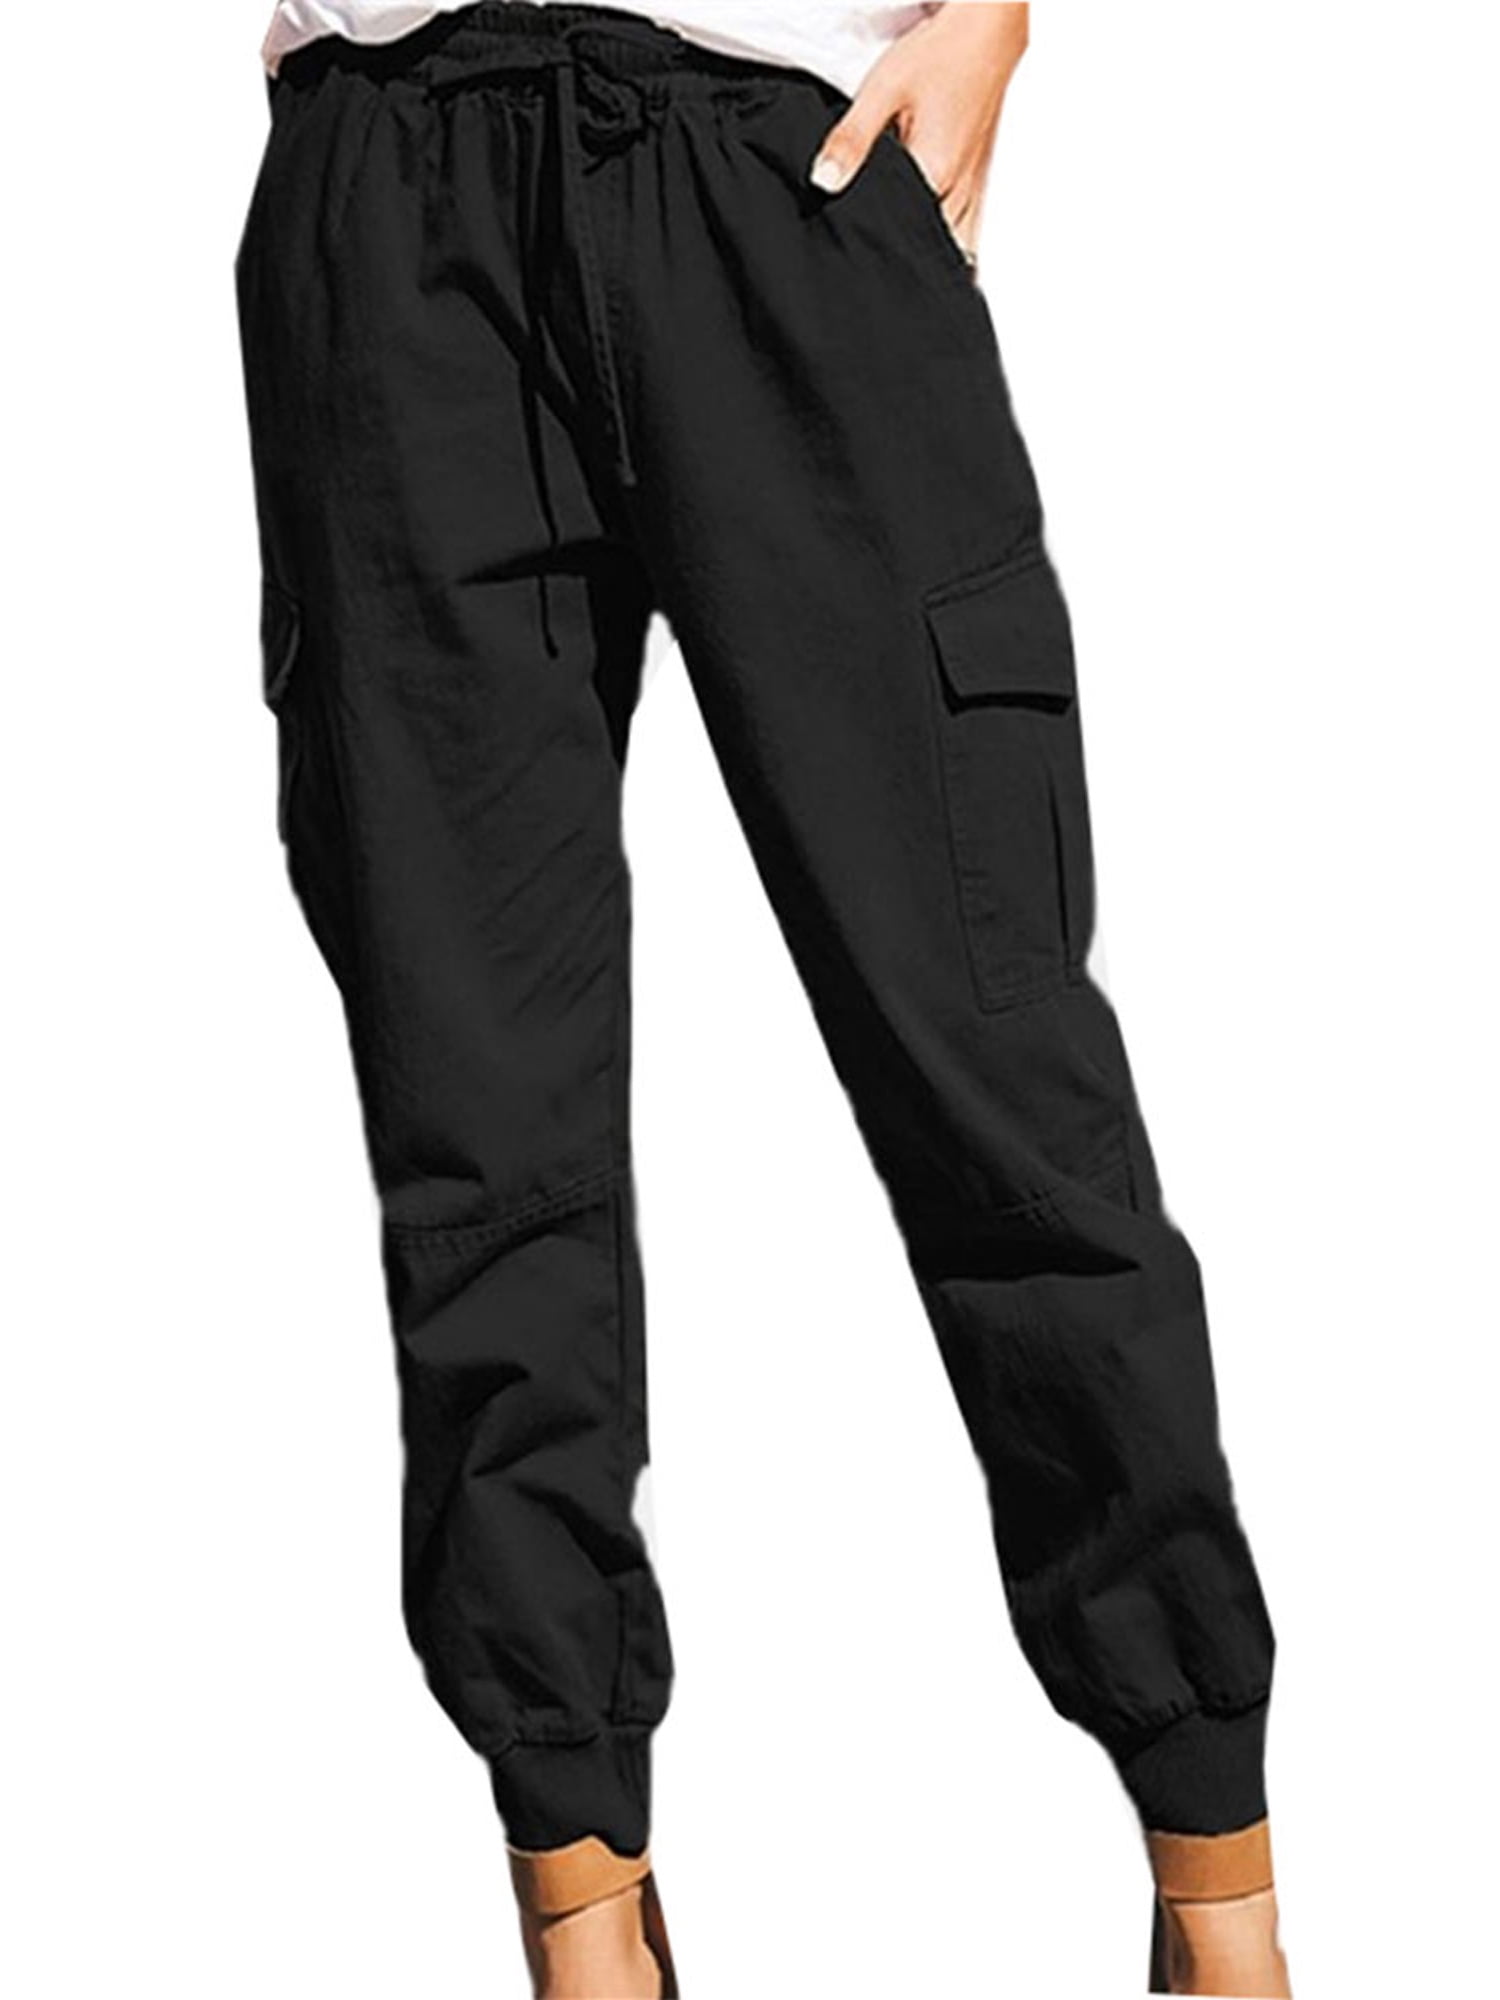 Tapsier Womens Cargo Pants Casual Plain Jogger Trousers Black - Walmart.com